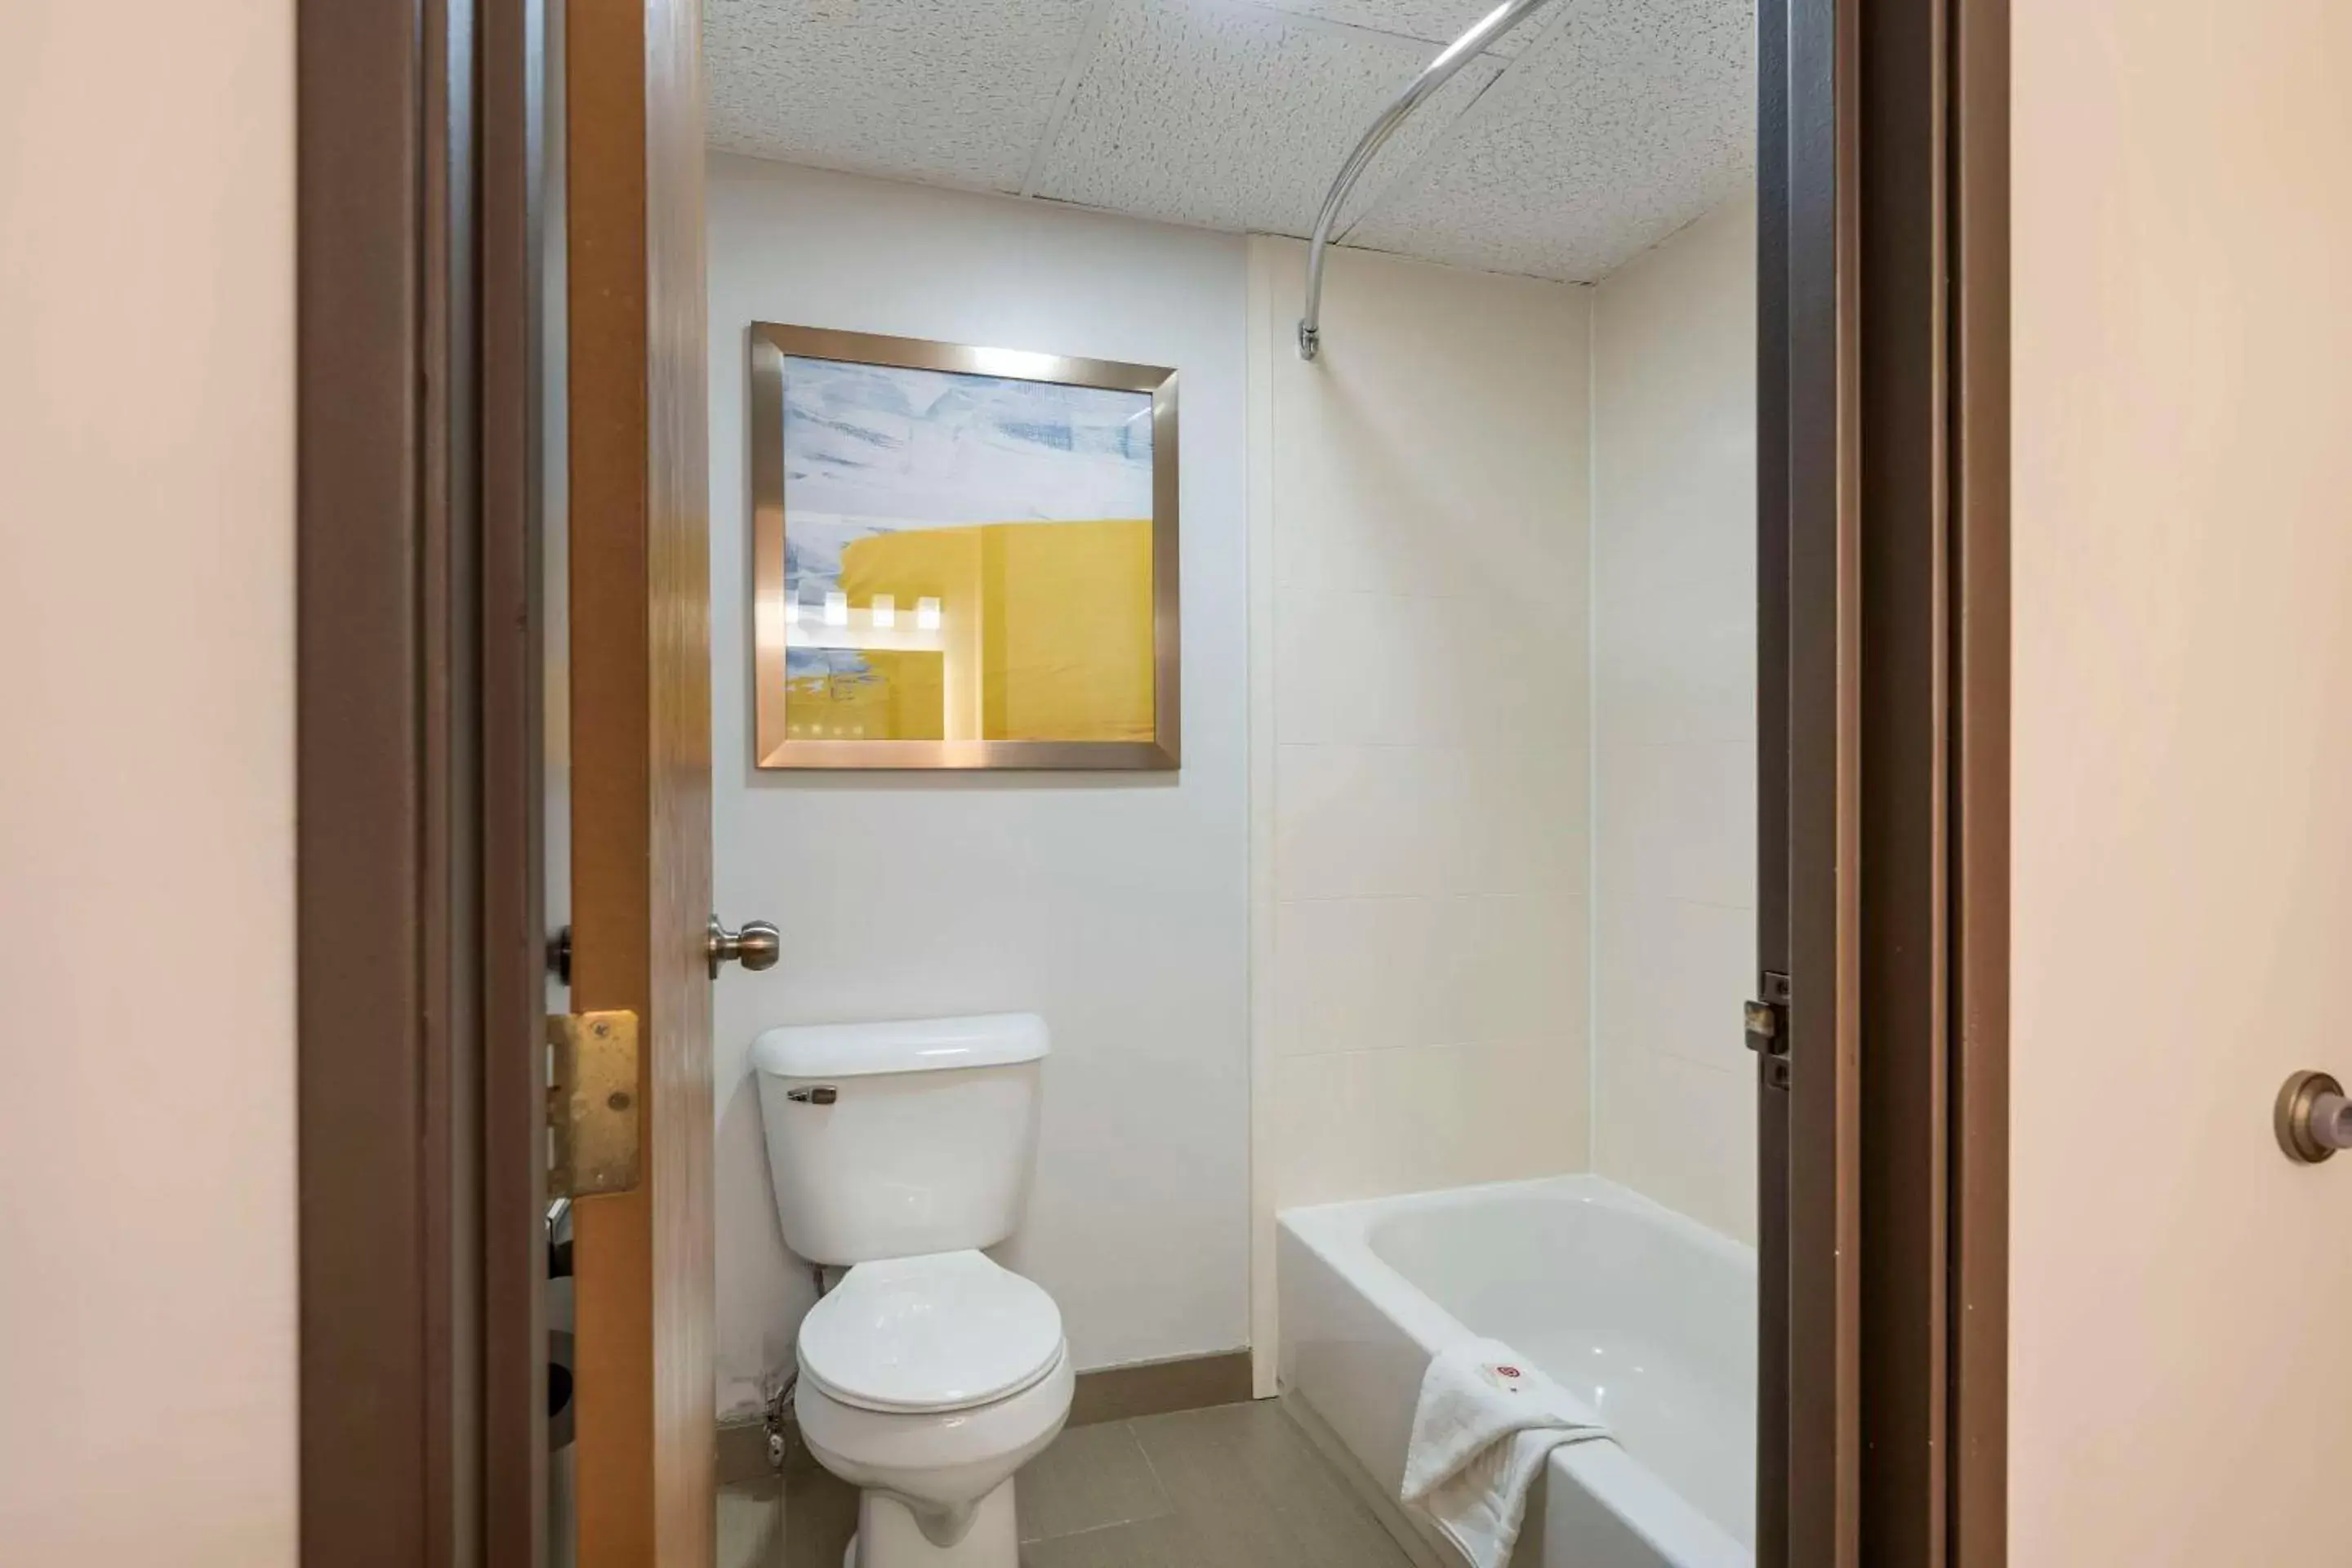 Bedroom, Bathroom in Comfort Inn Hastings